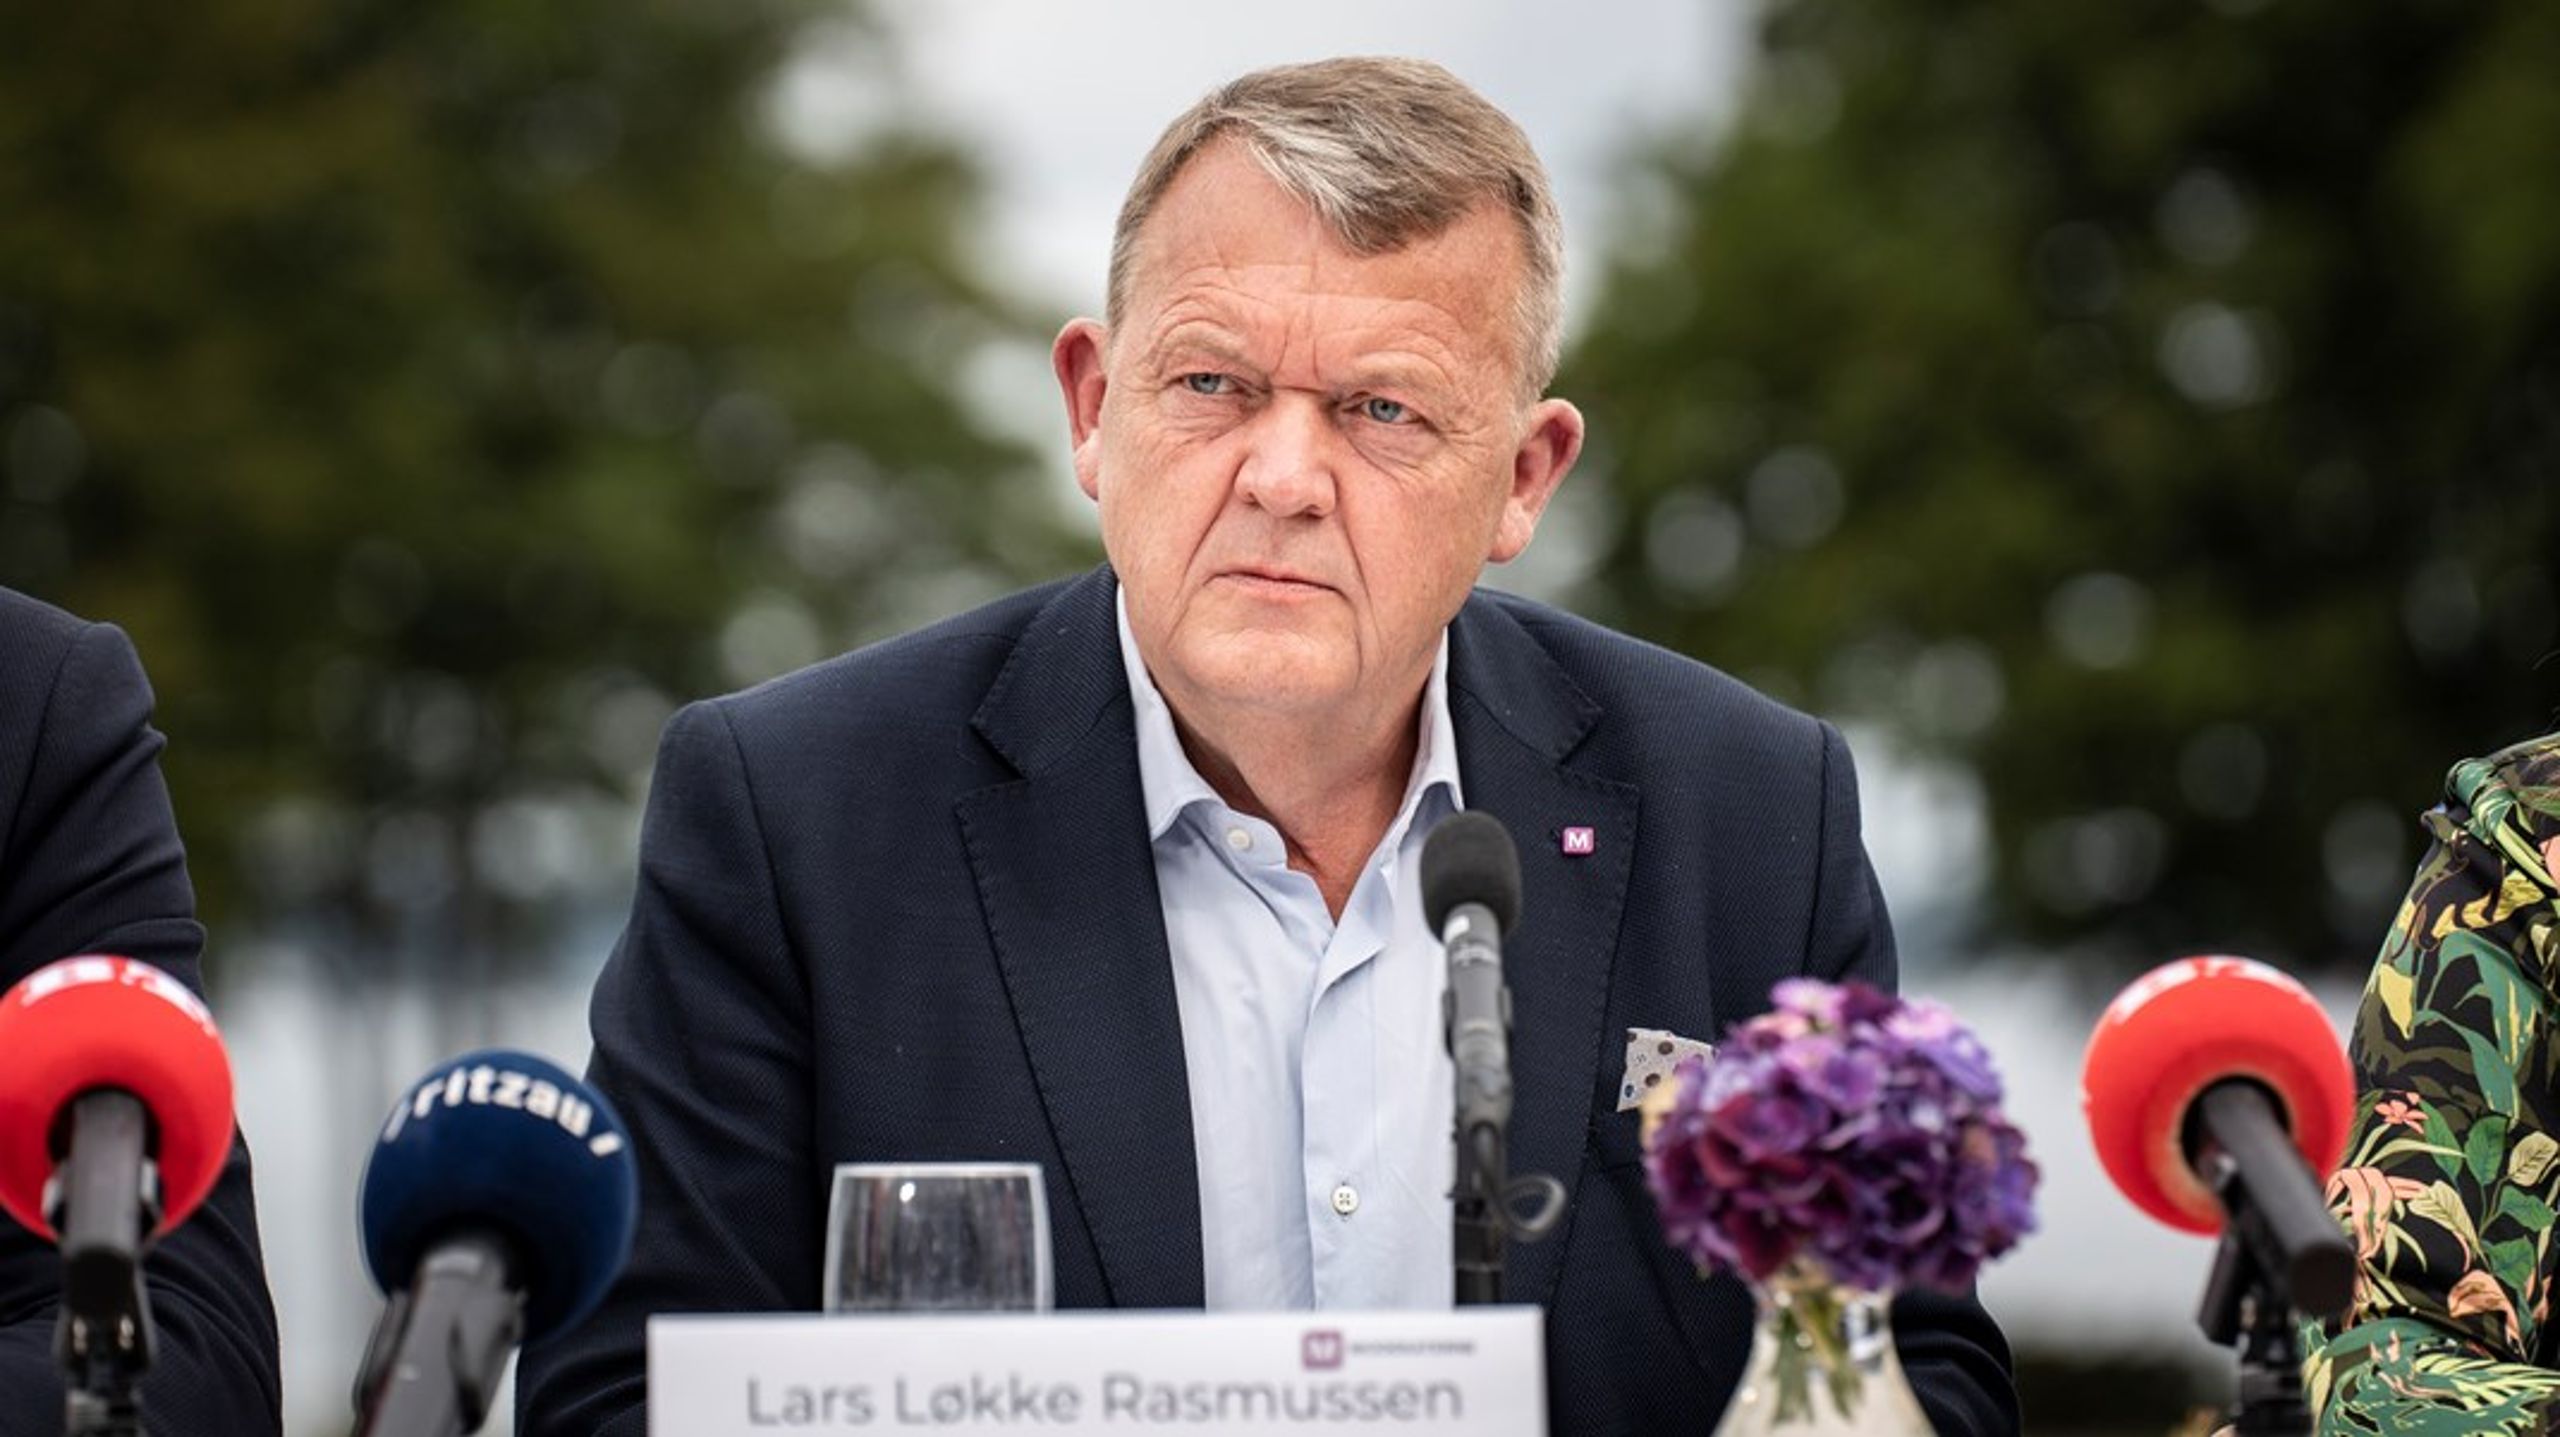 I torsdagens samråd skal udenrigsminister Lars Løkke Rasmussen svare på, hvorfor han har undskyldt koranafbrændinger i Danmark overfor andre landes udenrigsministre.&nbsp;